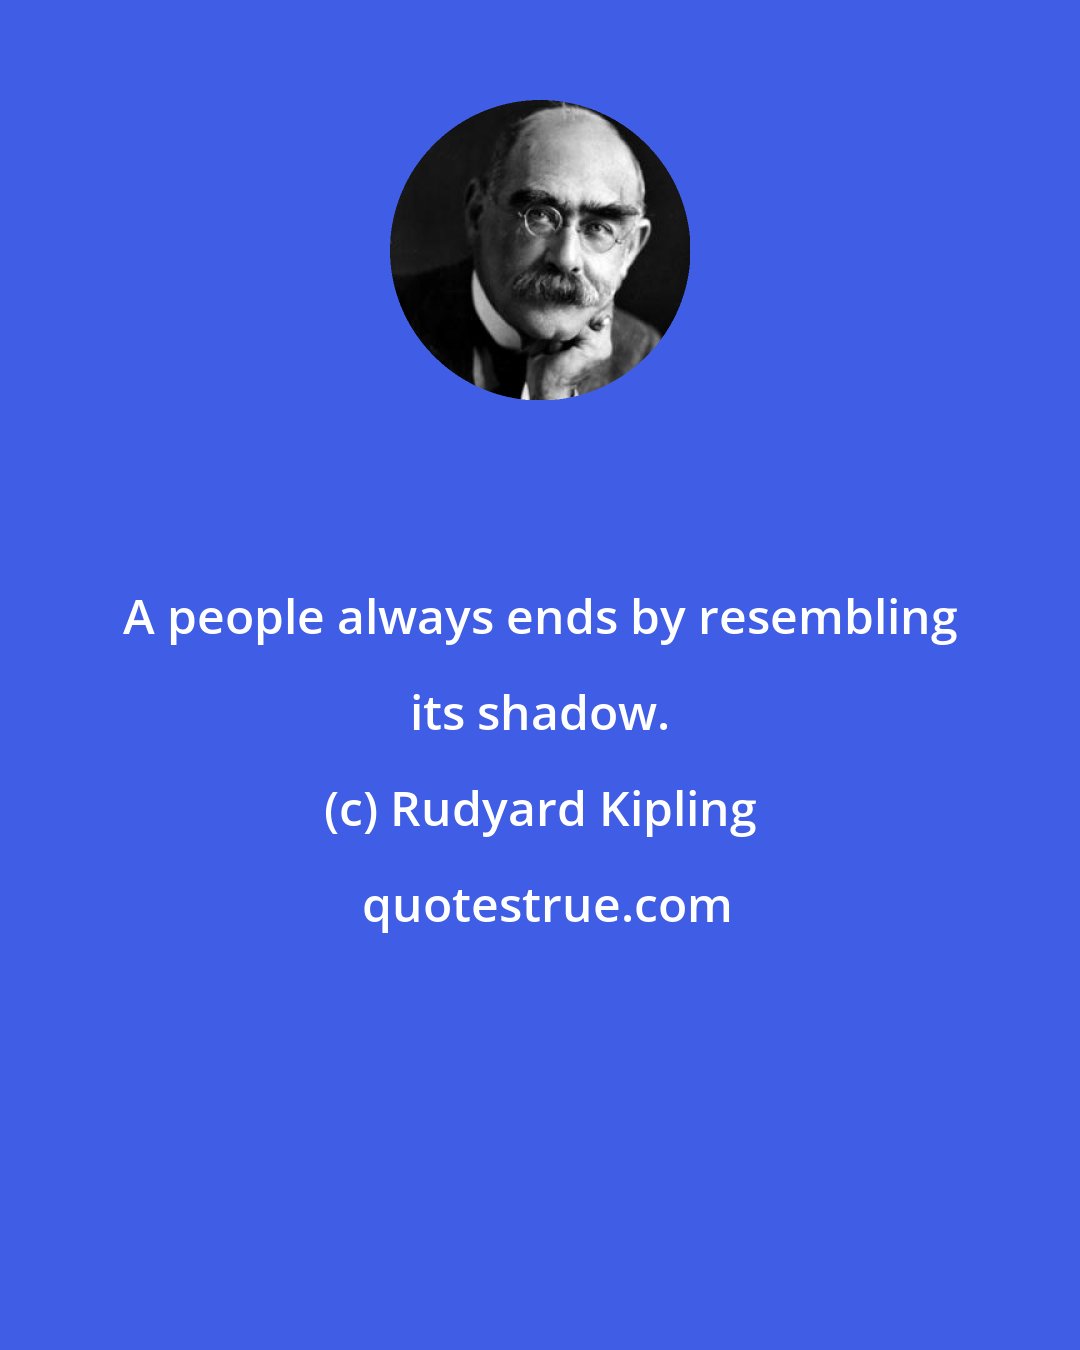 Rudyard Kipling: A people always ends by resembling its shadow.